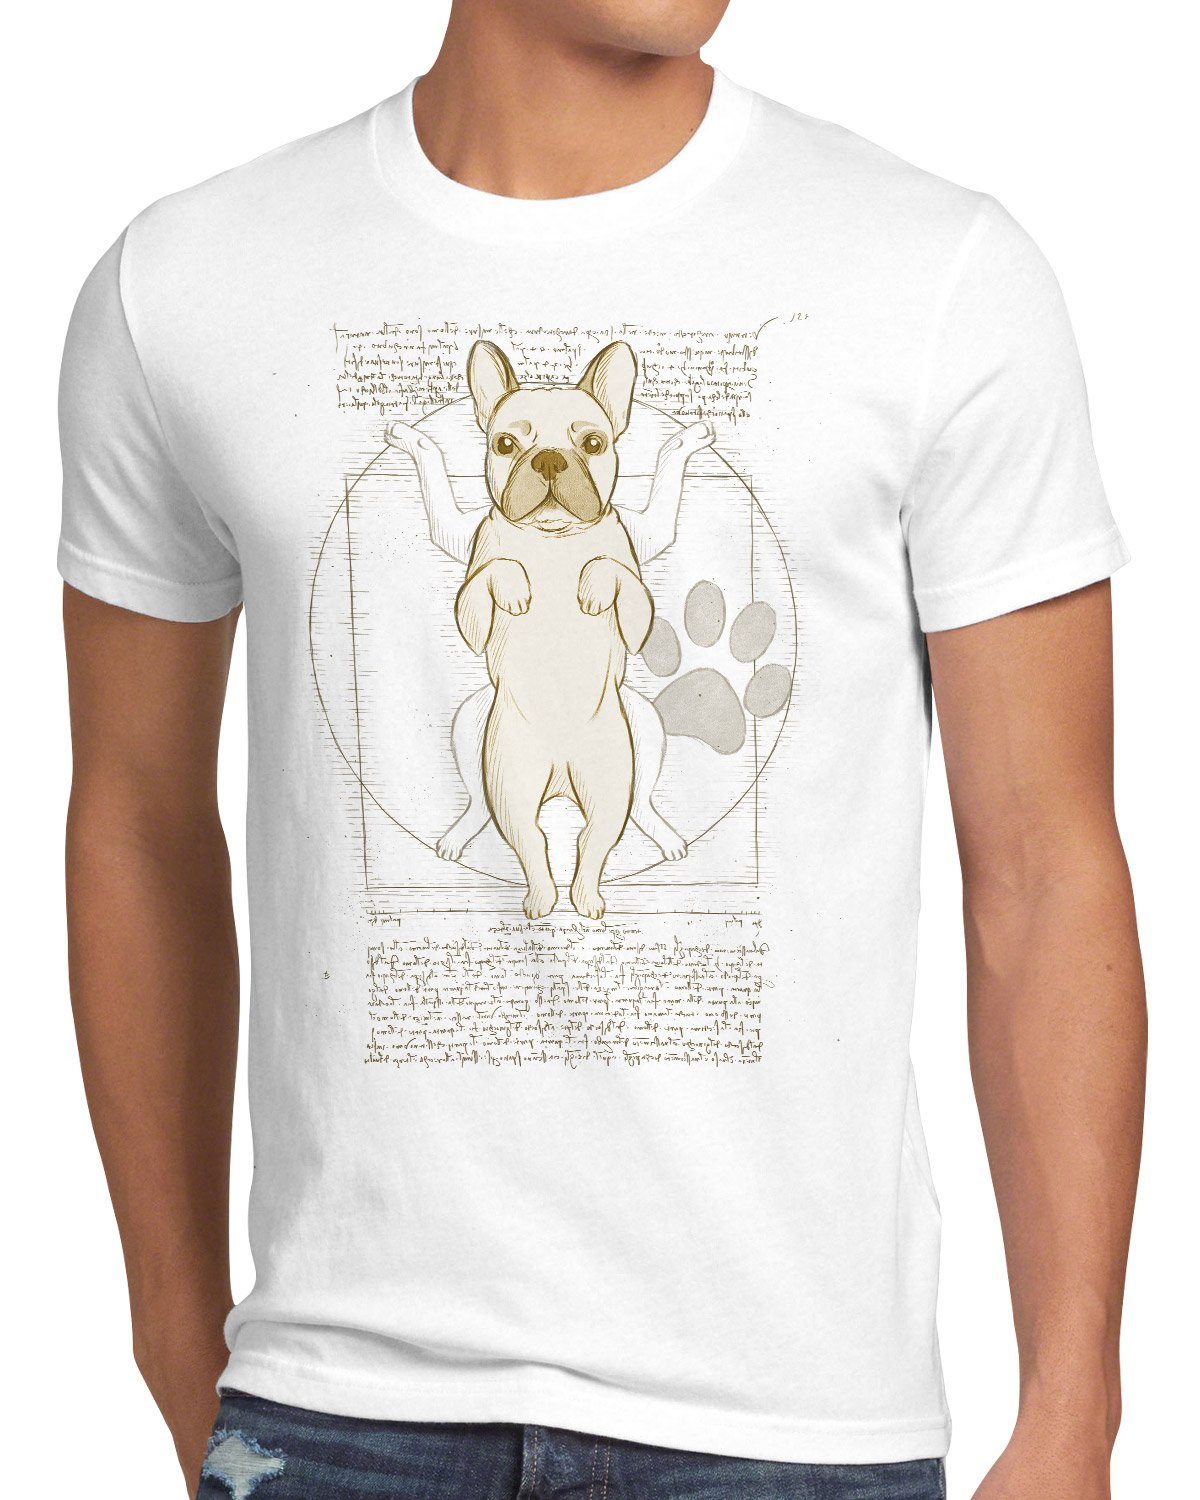 Herren Vitruvianischer style3 französische Print-Shirt T-Shirt weiß Frenchie bulldogge hund